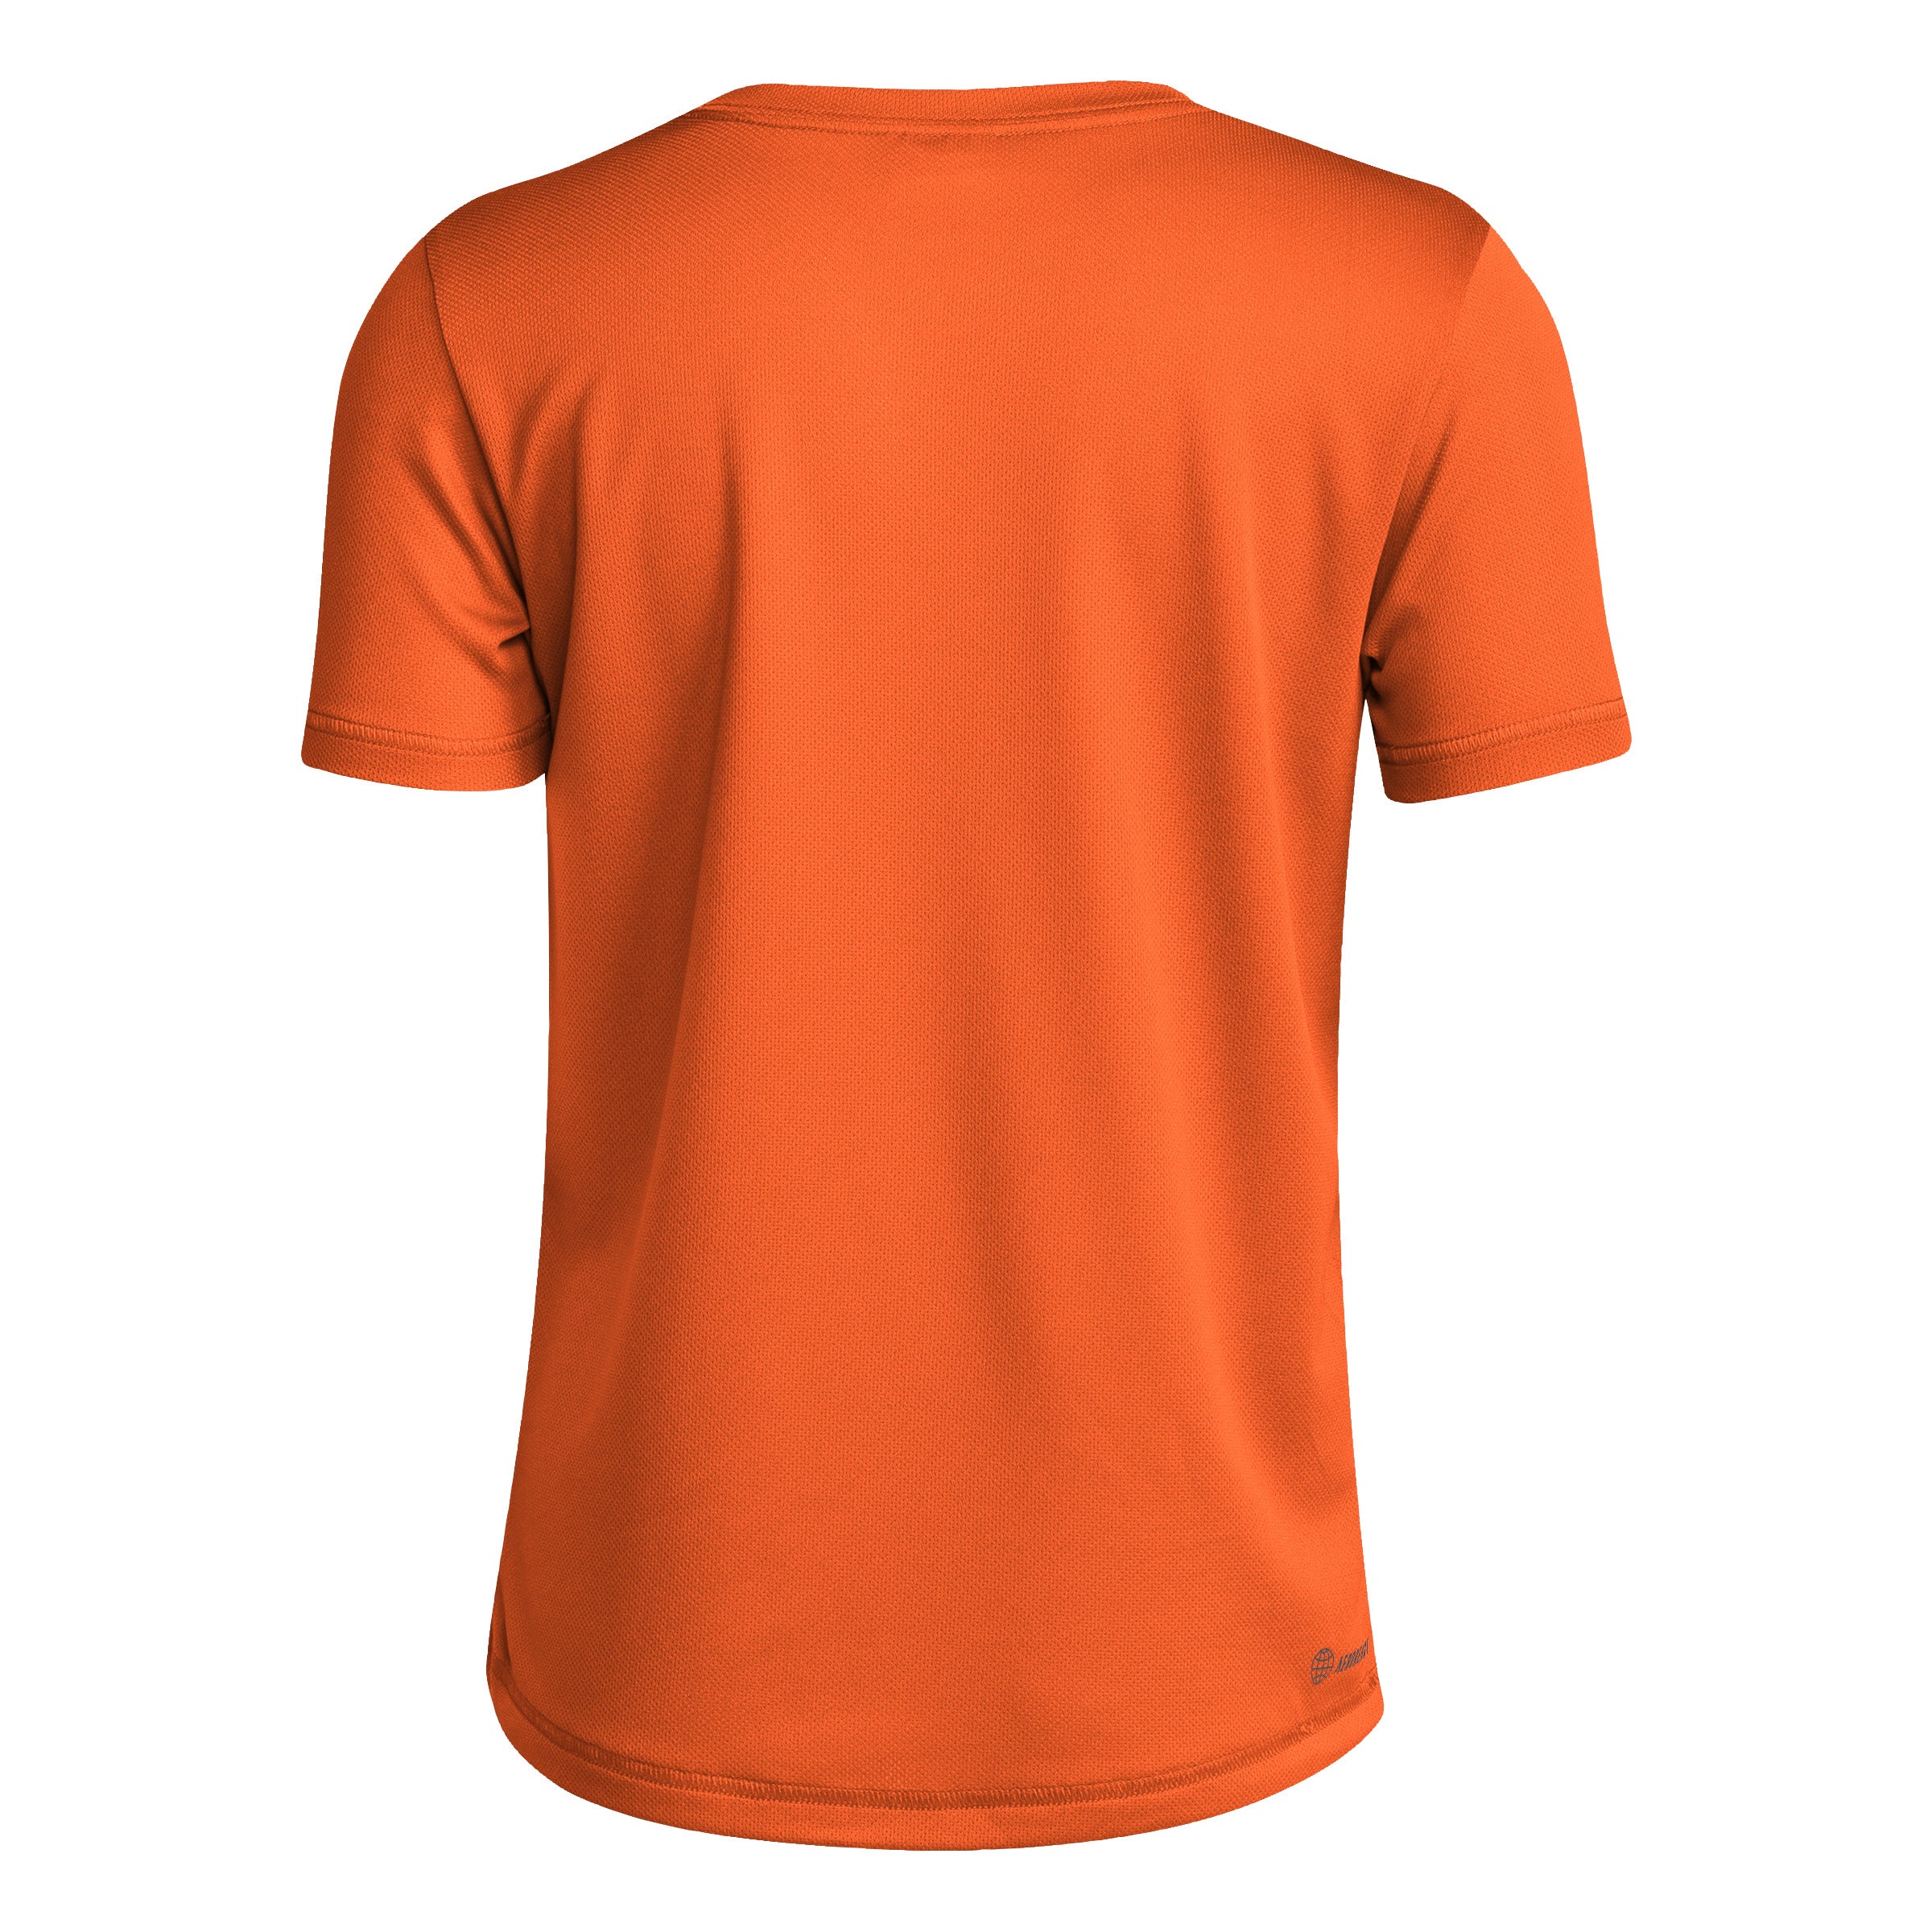 Miami Hurricanes adidas Youth State of Miami Pregame T-Shirt - Orange